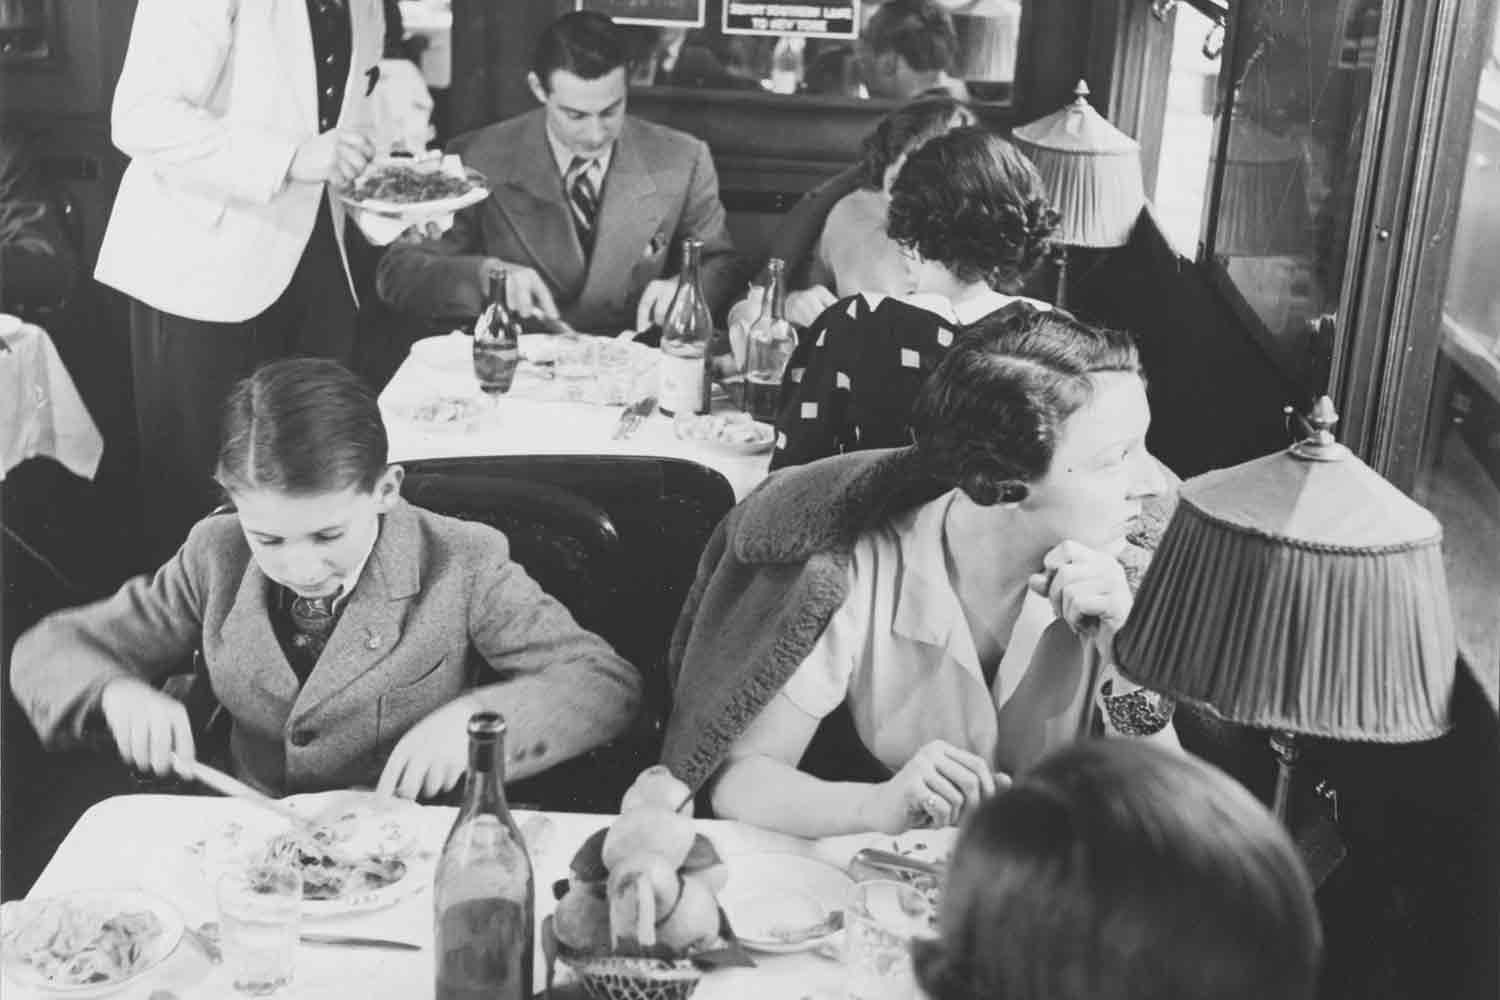 Passeggeri a bordo di una delle carrozze ristorante della Compagnie (circa 1930) © Fonds de dotation Orient Express